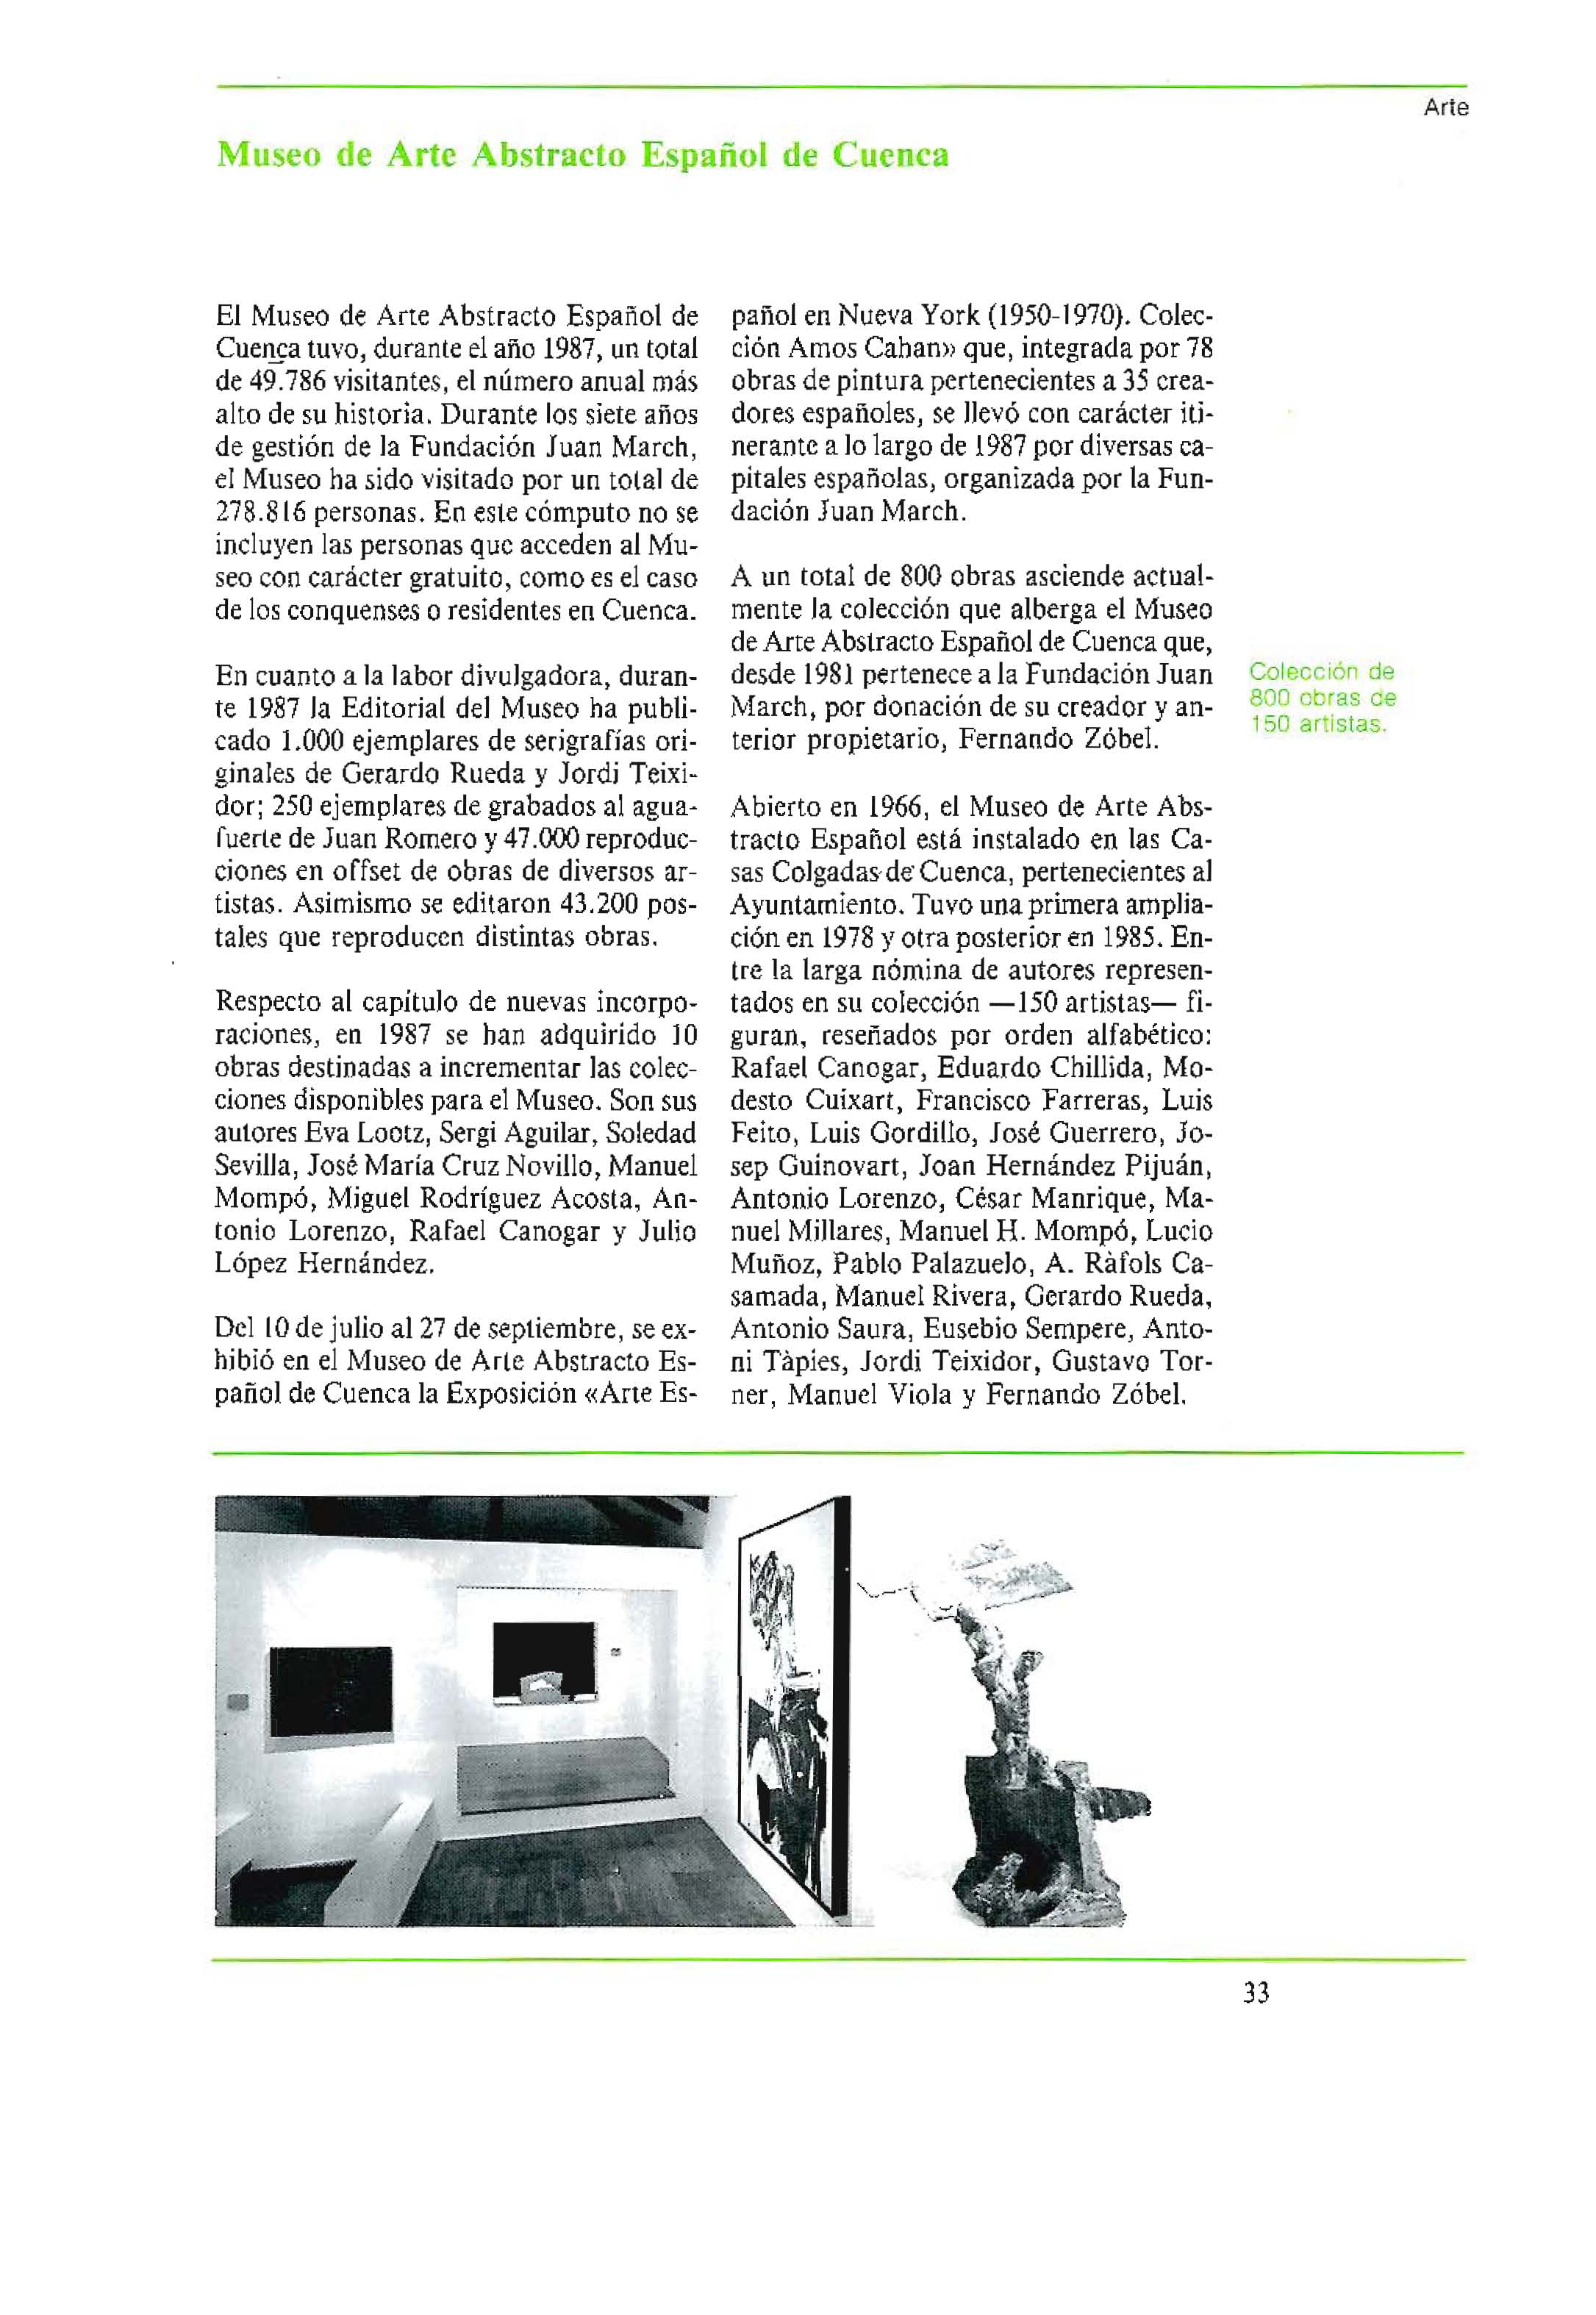 Museo de Arte Abstracto Espafiol de Cuenca Ar te EI Museo de Arte Abstracto Espanol de Cuencatuvo, duranteelano 1987, un total de 49.